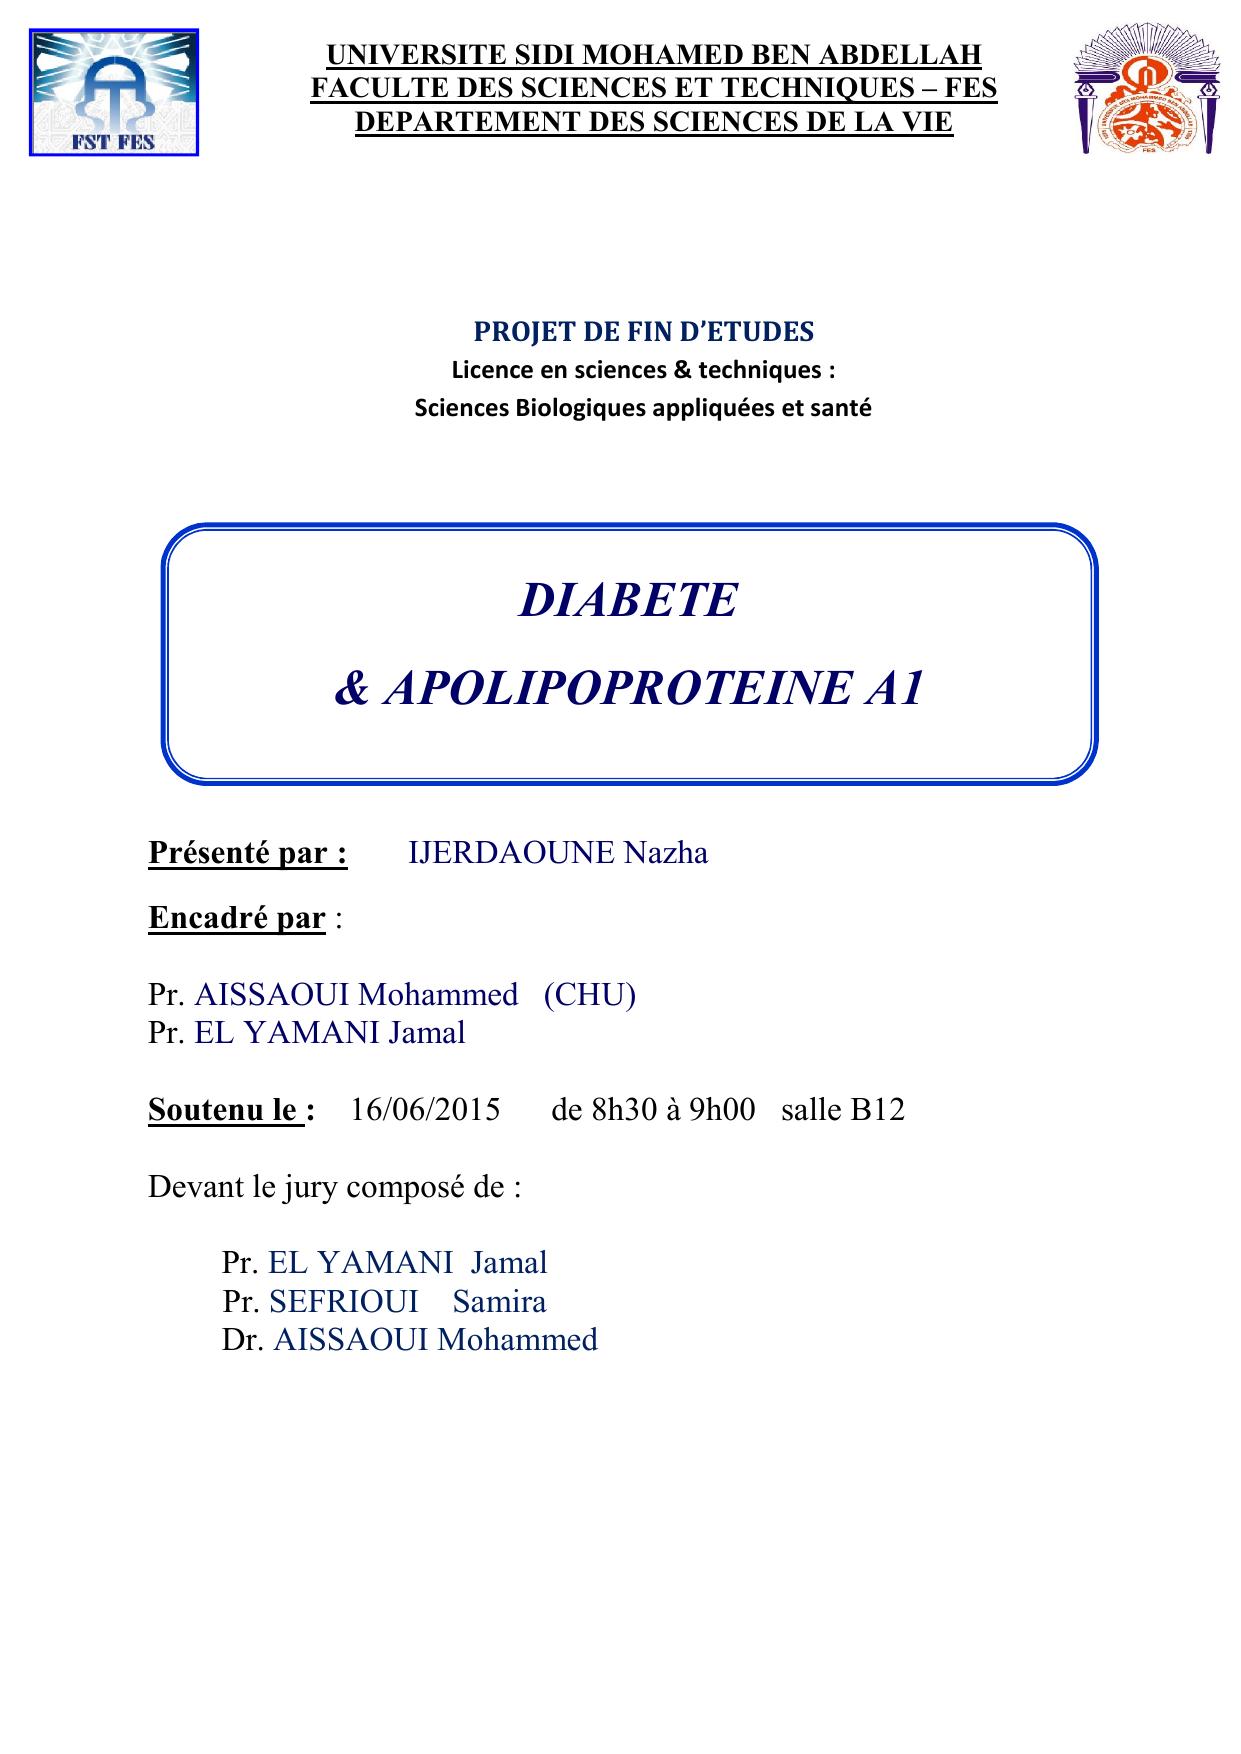 DIABETE & APOLIPOPROTEINE A1